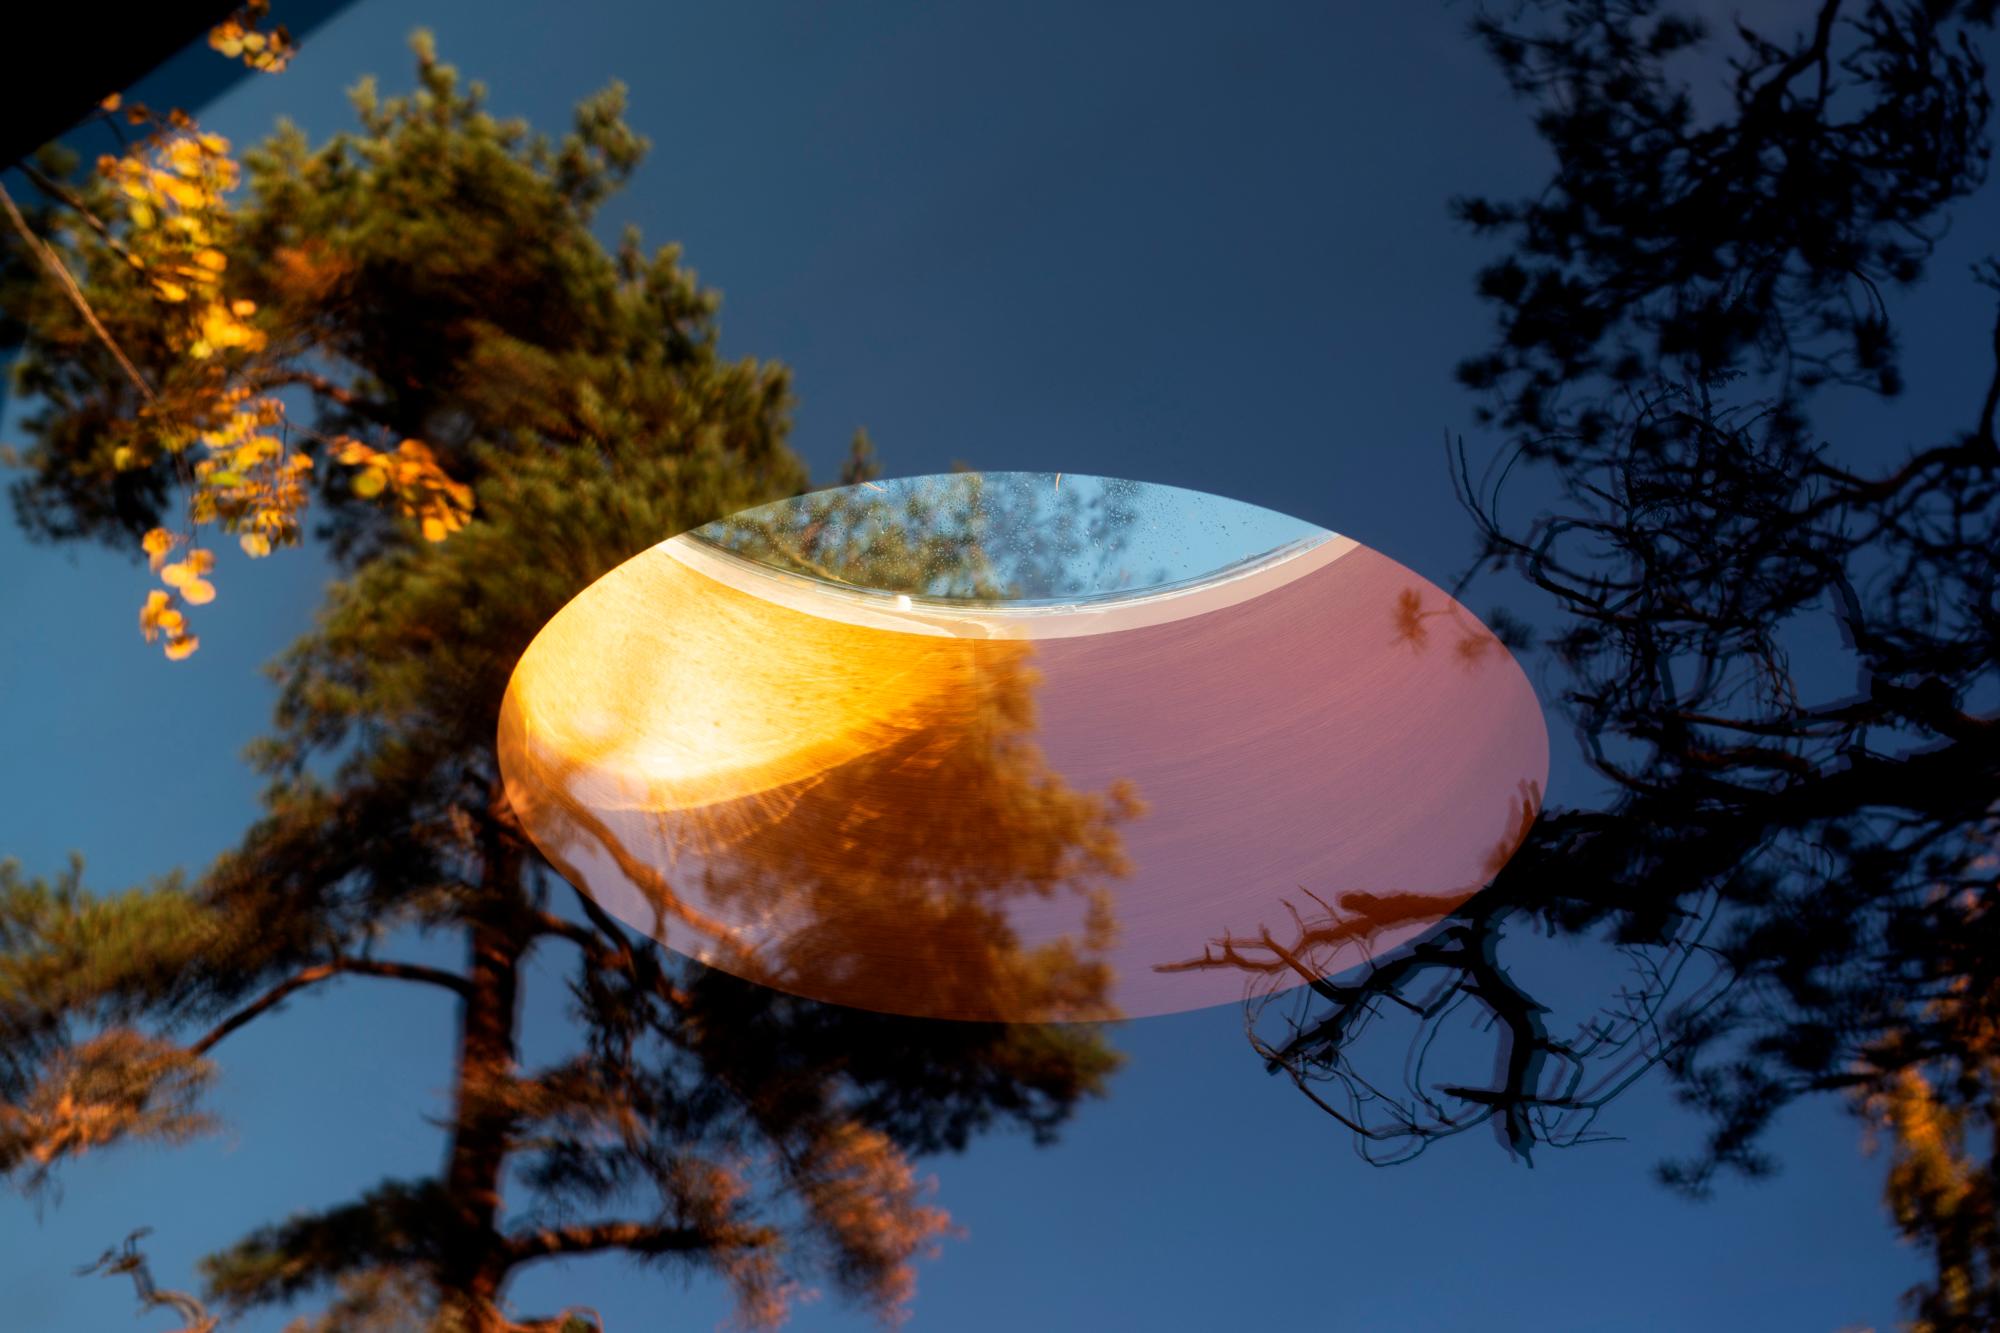 Una especie de ojo de buey se asoma en el techo de la cabaña que está incrustada en el bosque de Oslo.